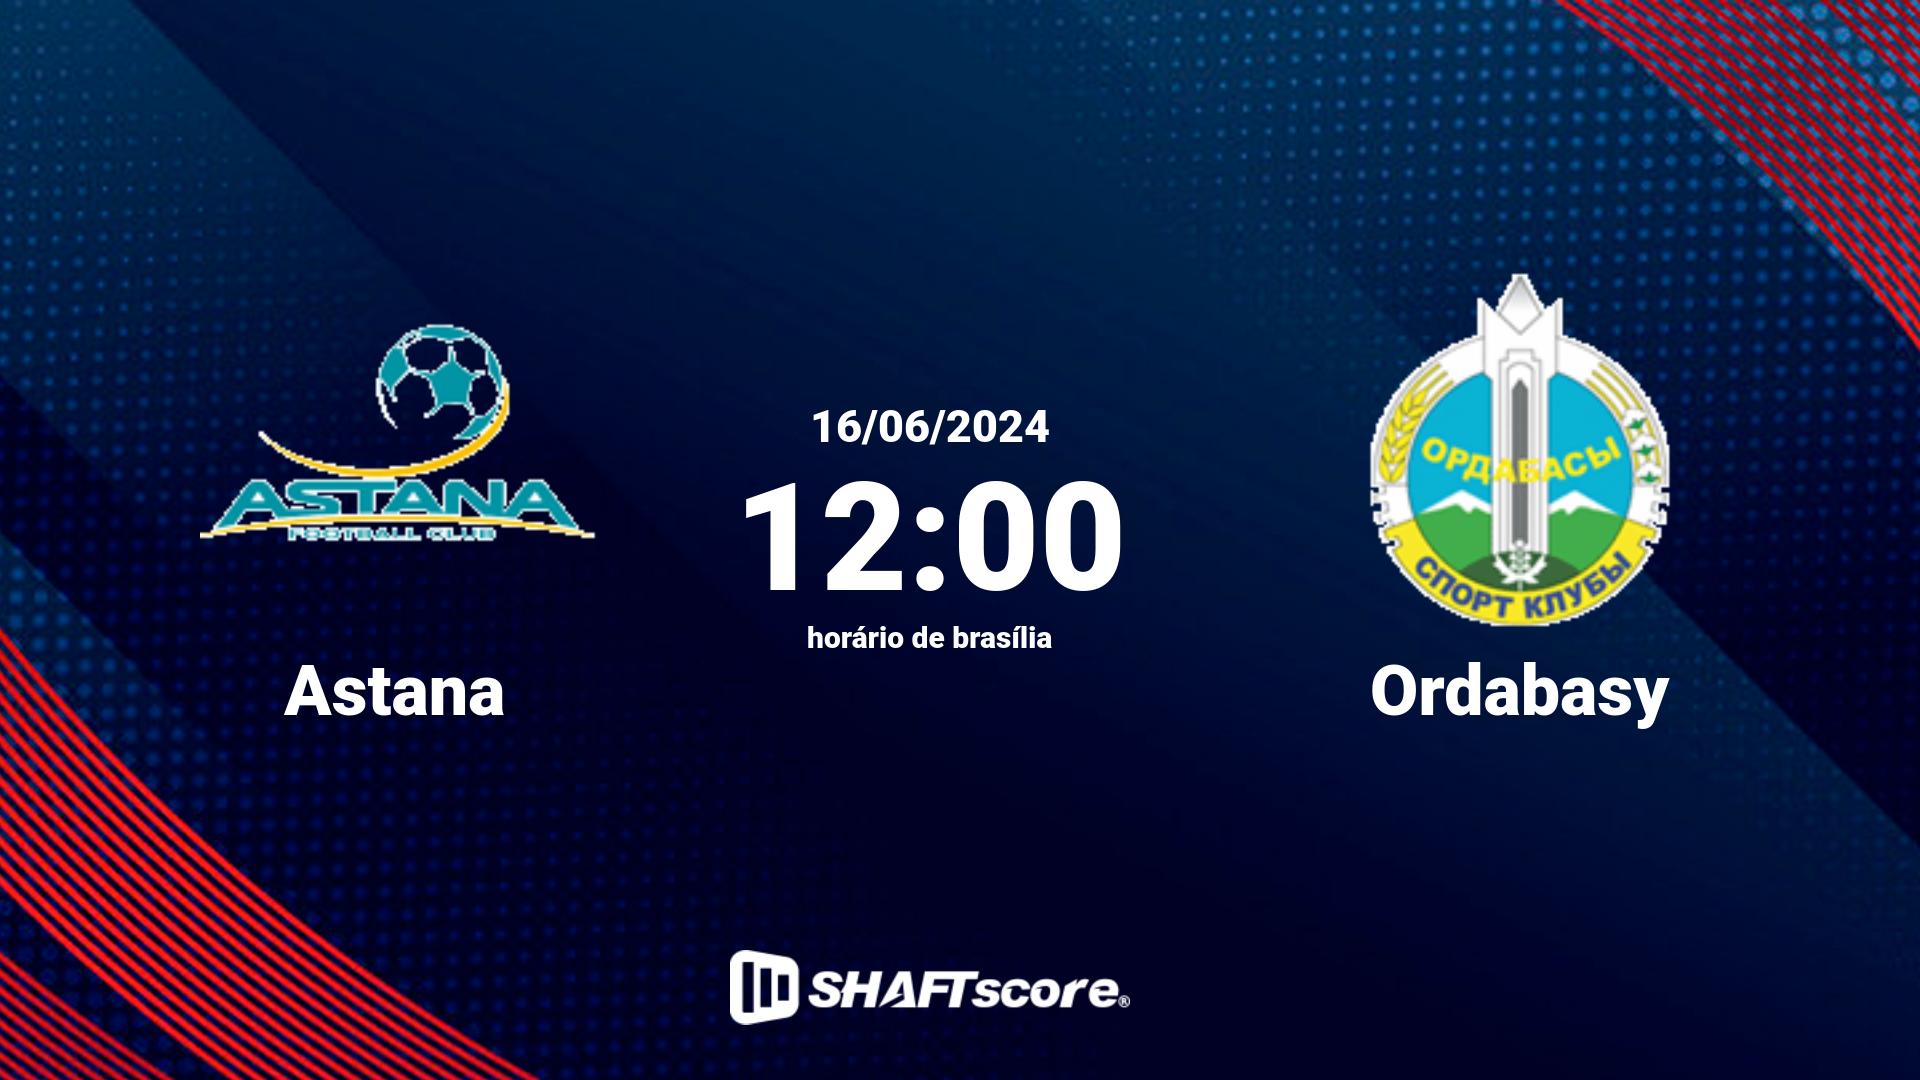 Estatísticas do jogo Astana vs Ordabasy 16.06 12:00